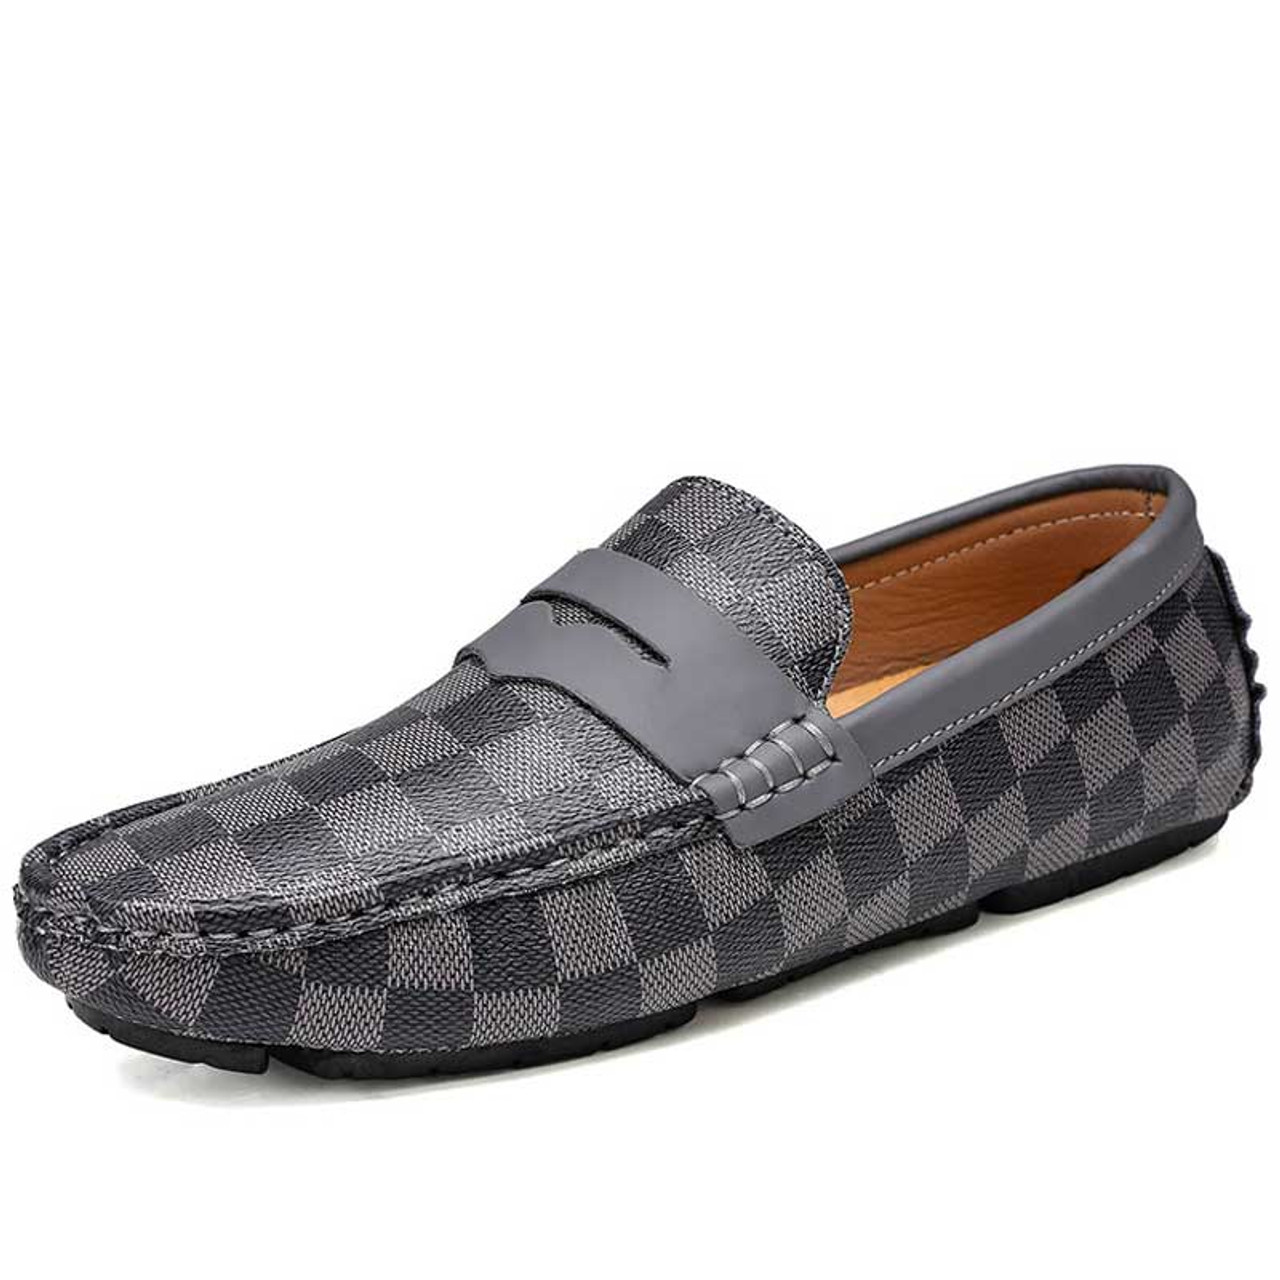 Grey Penny Check Pattern Slip on Shoe Loafer